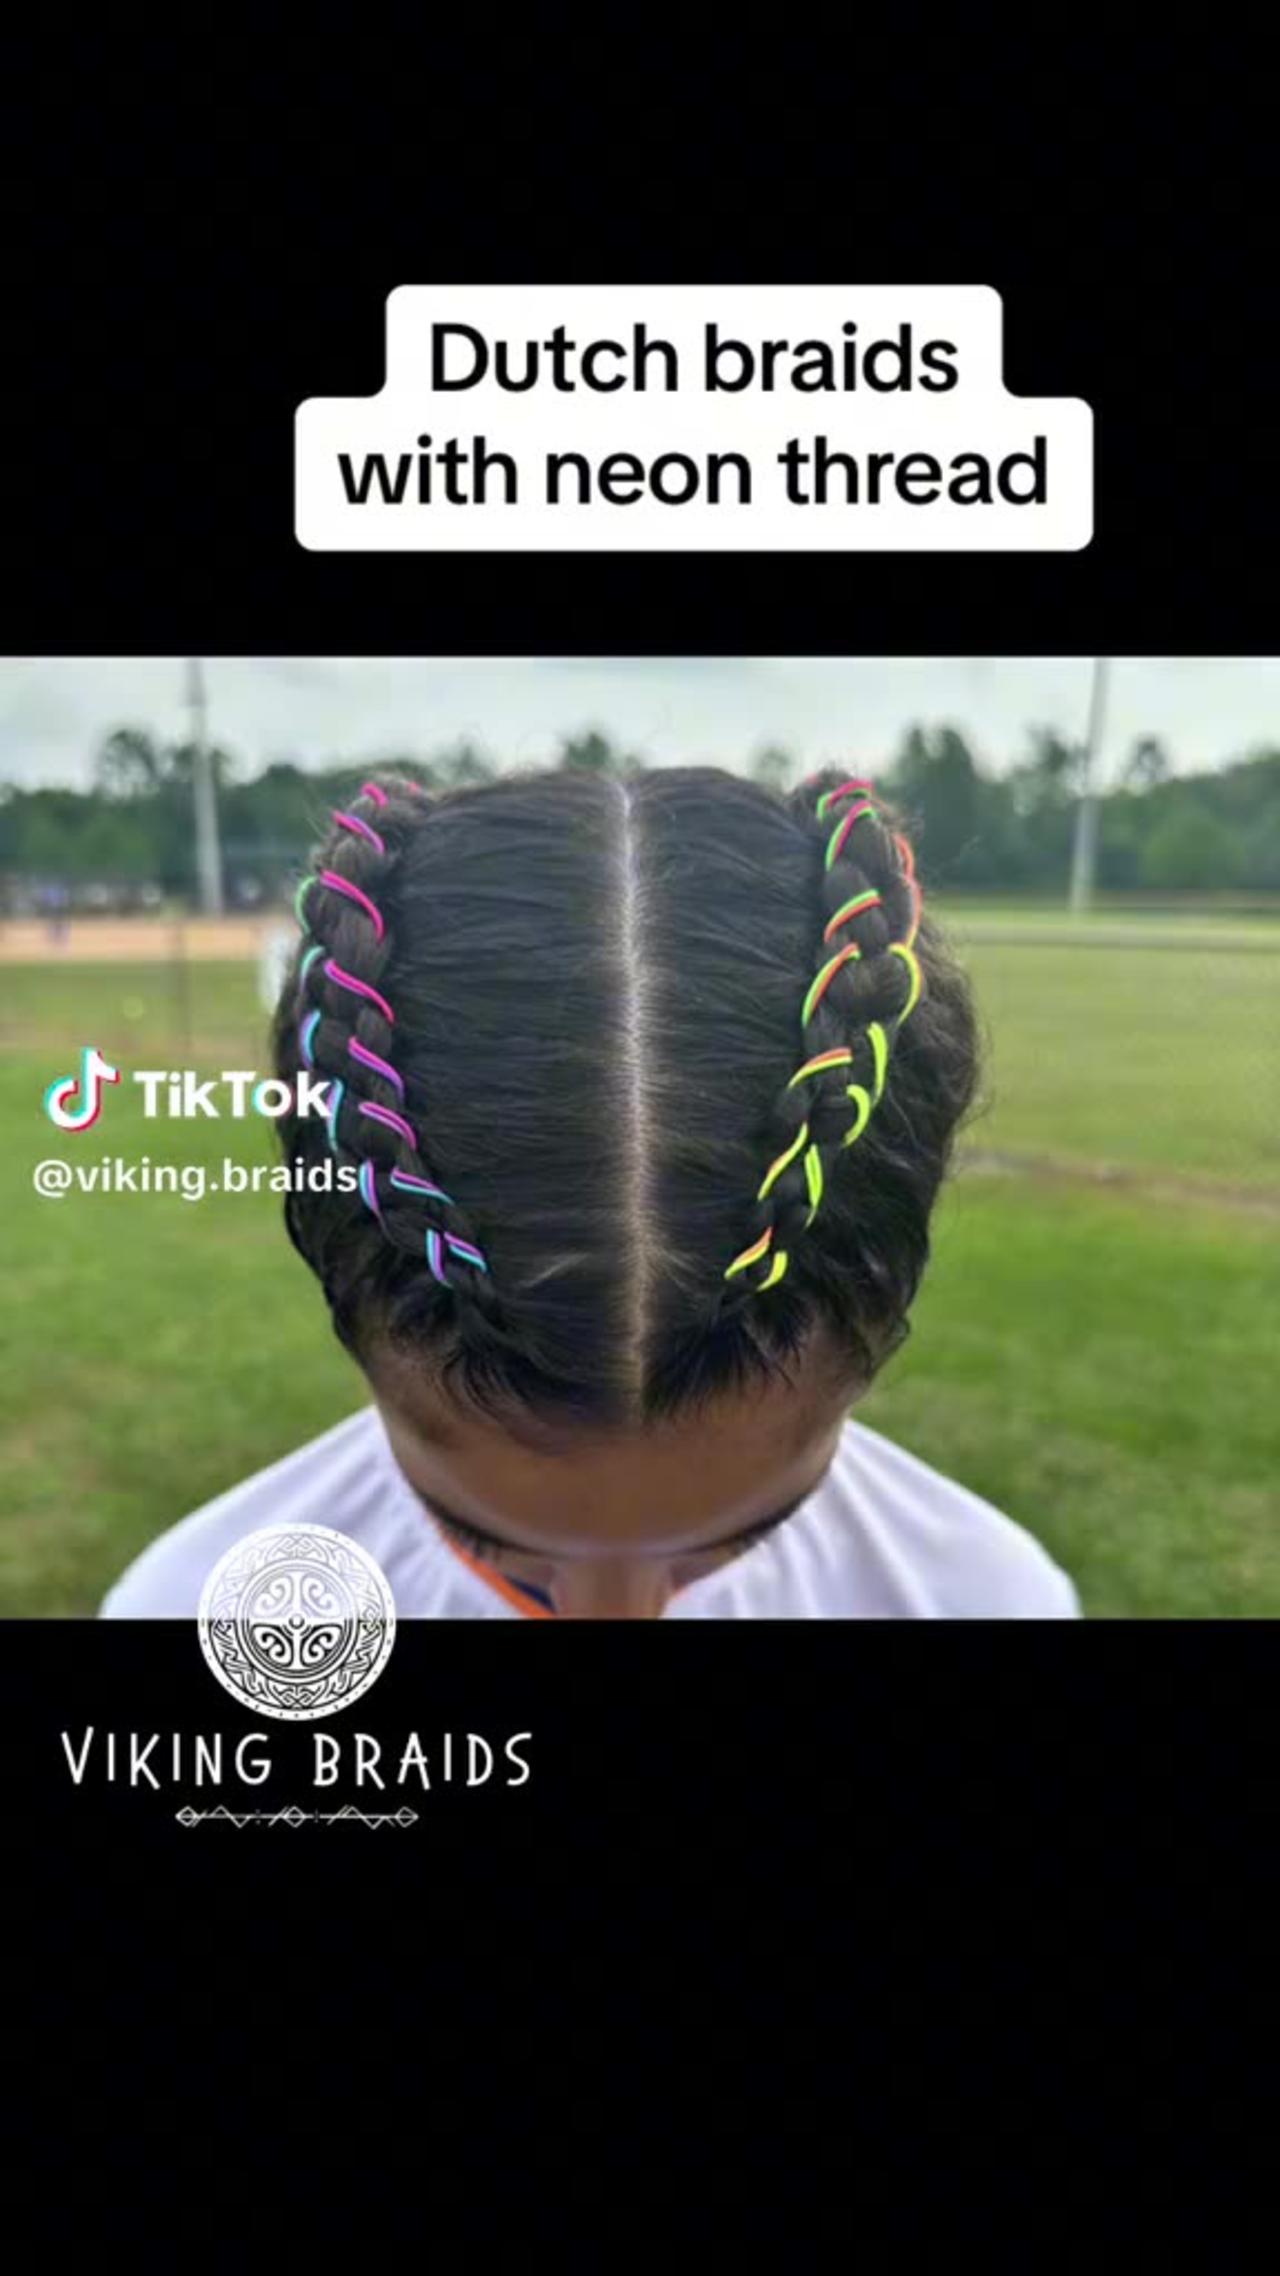 Viking Braids - Neon Thread